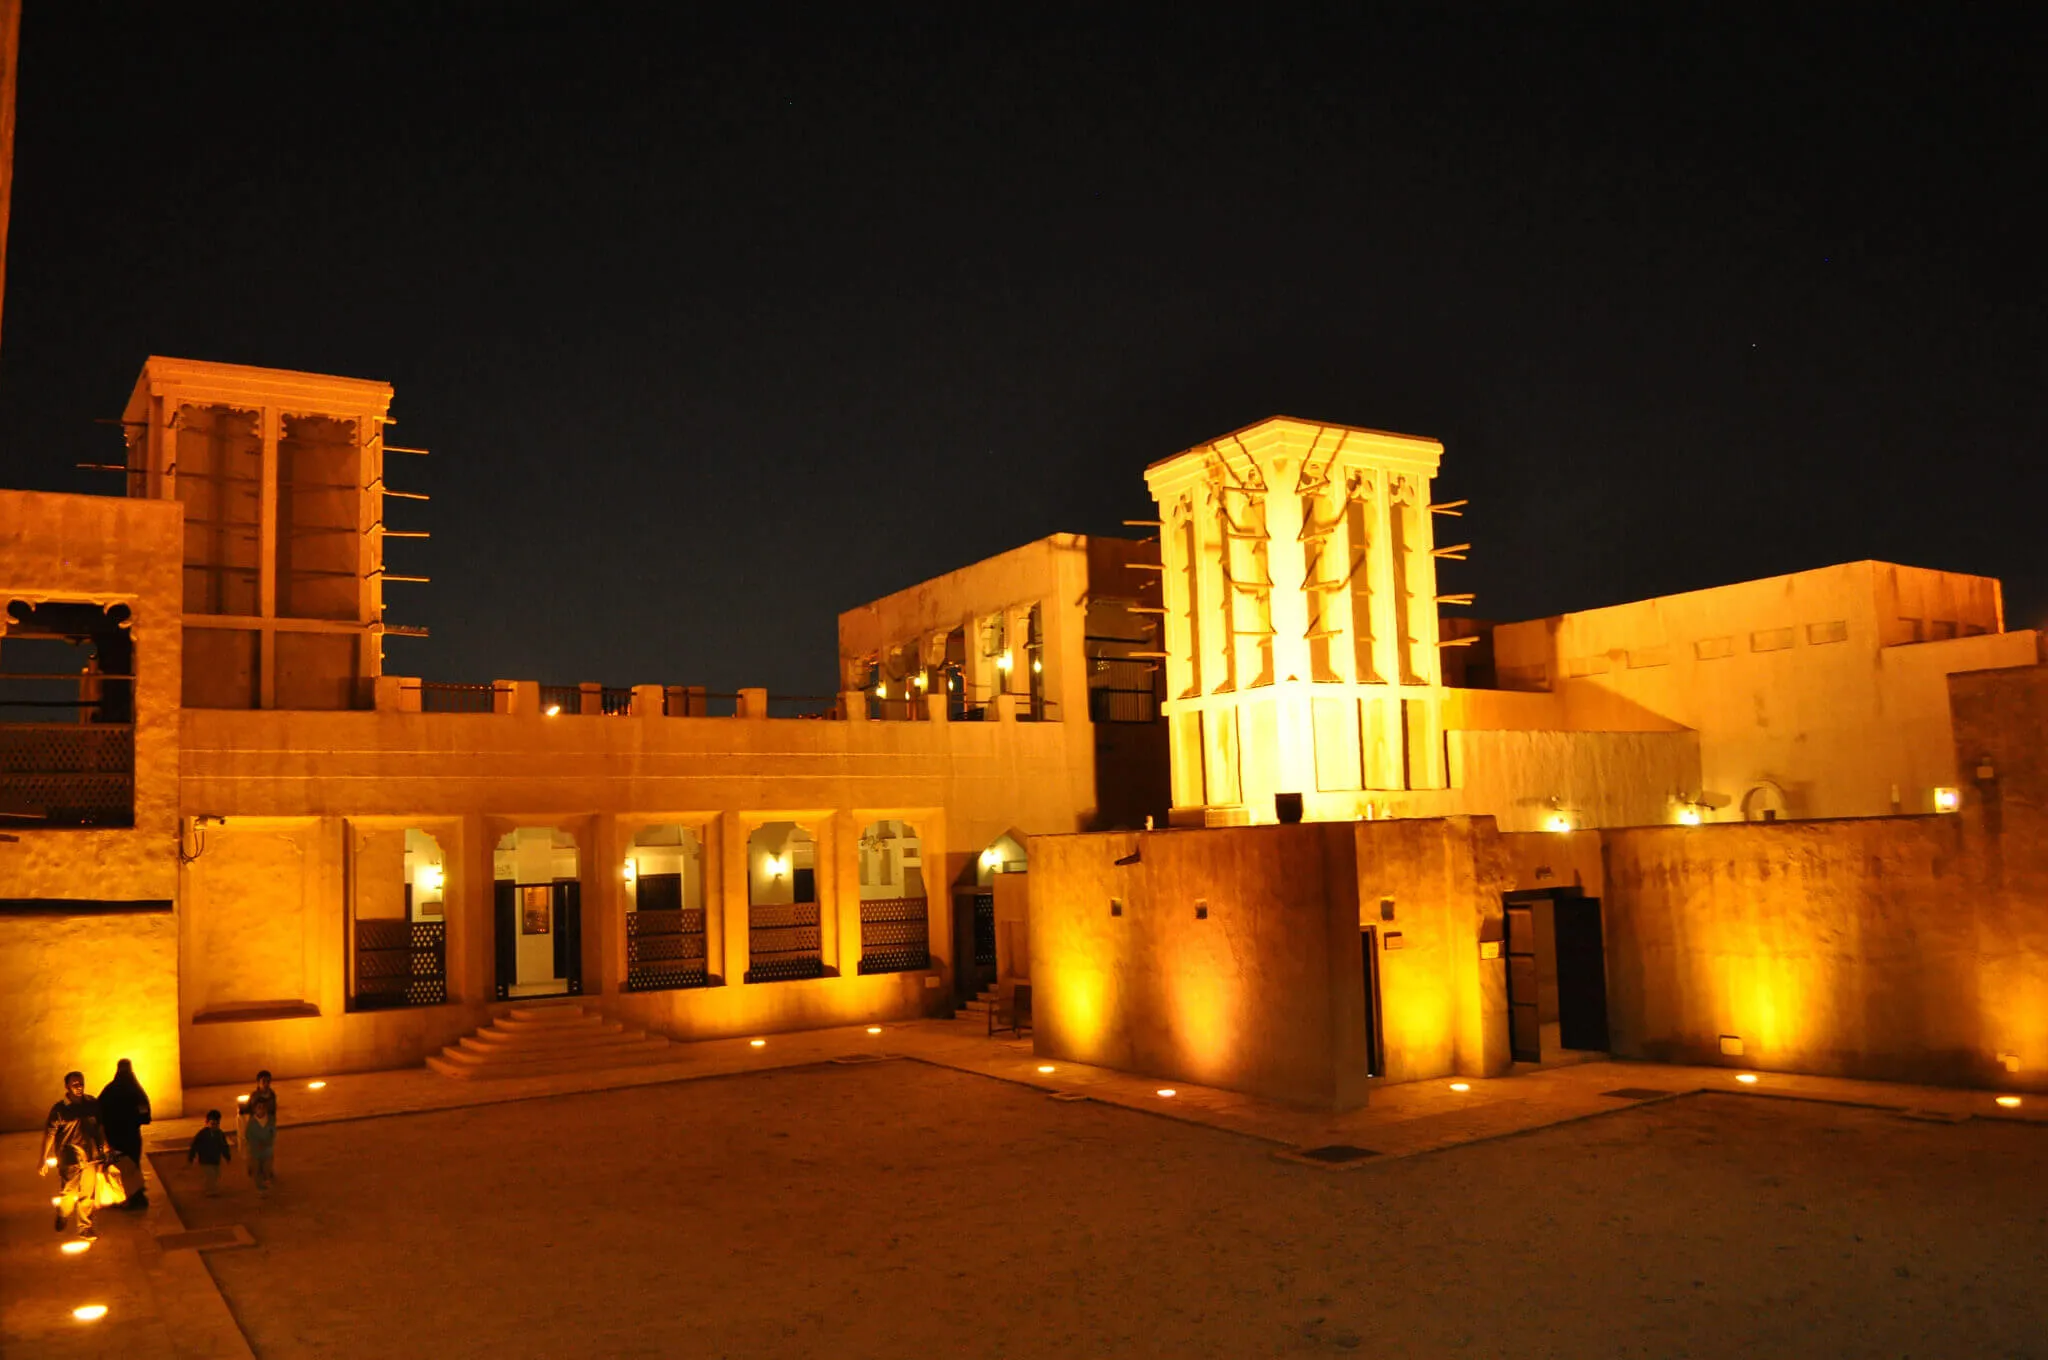 Дворец шейха Саида